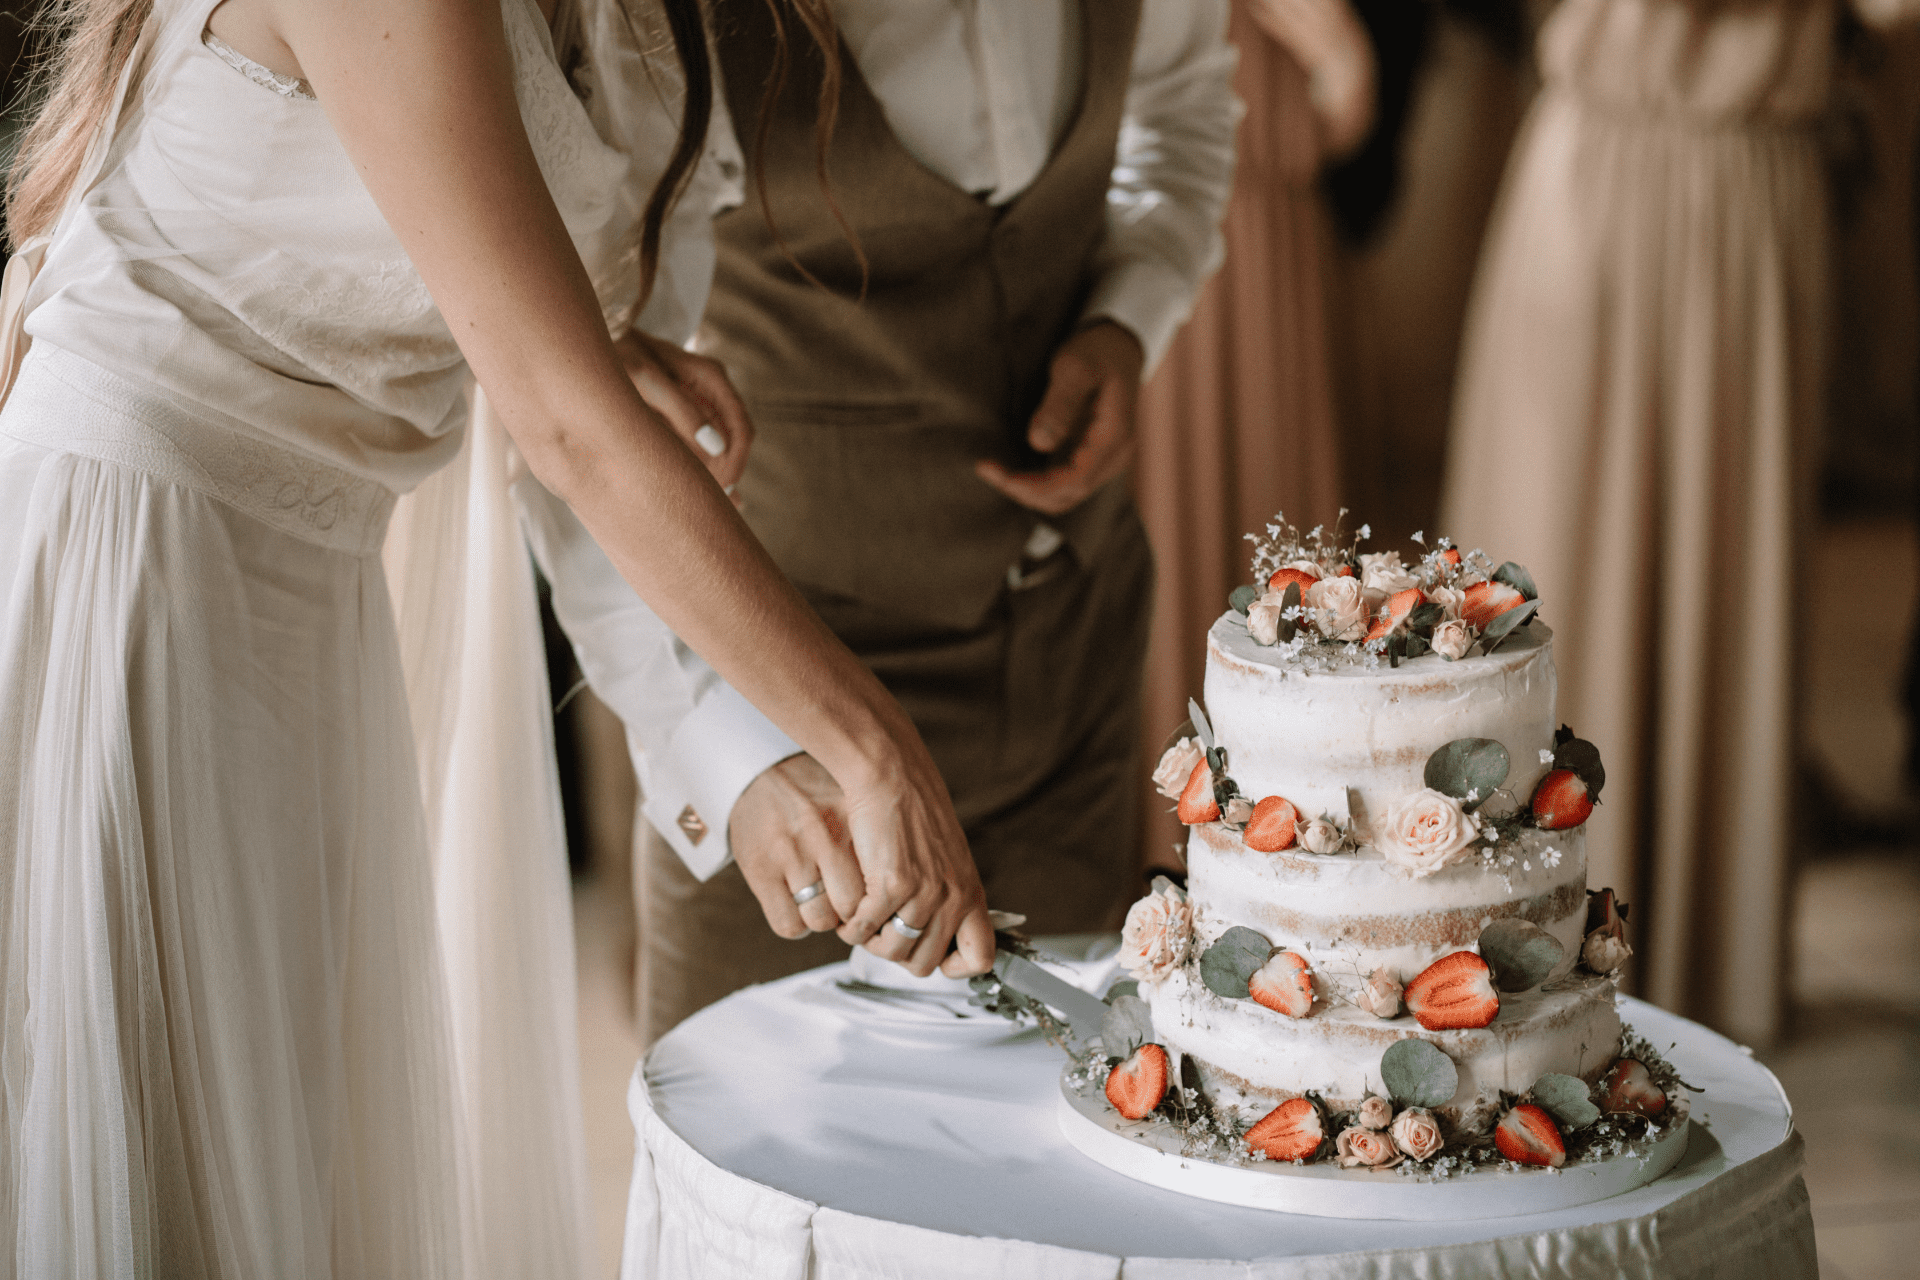 les mariés coupent le gâteau de mariage